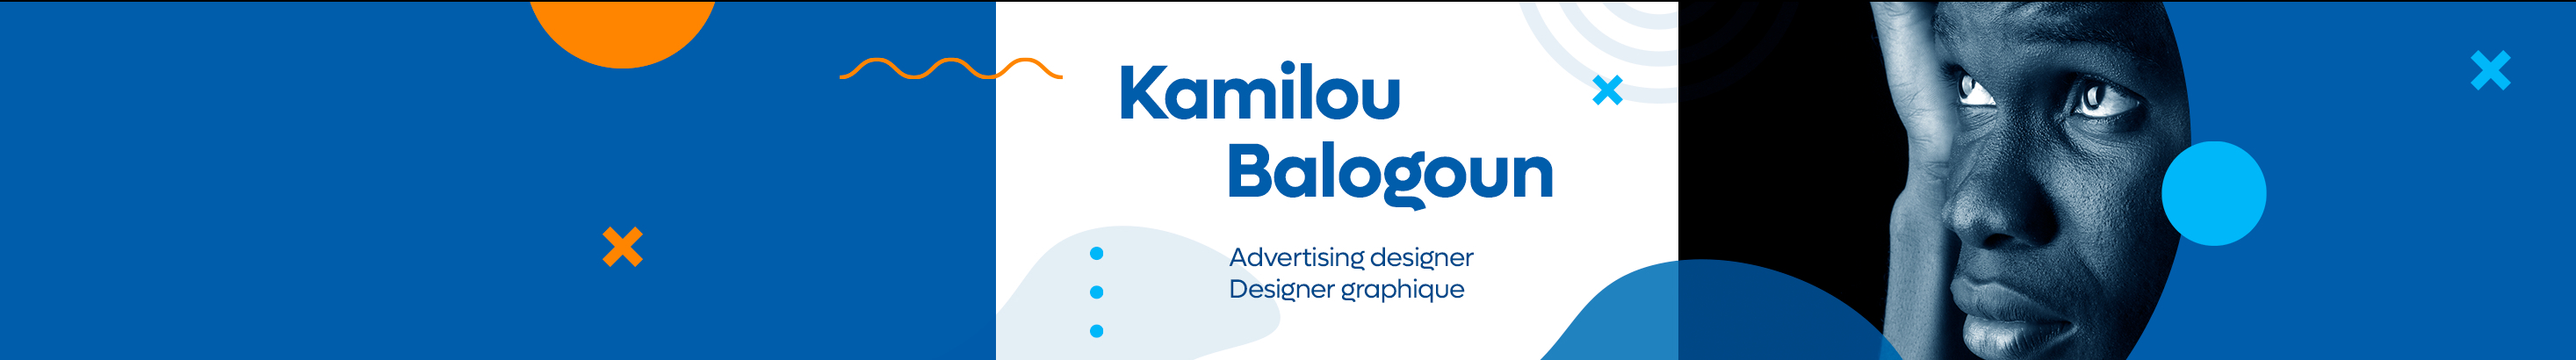 Kamilou Balogoun's profile banner